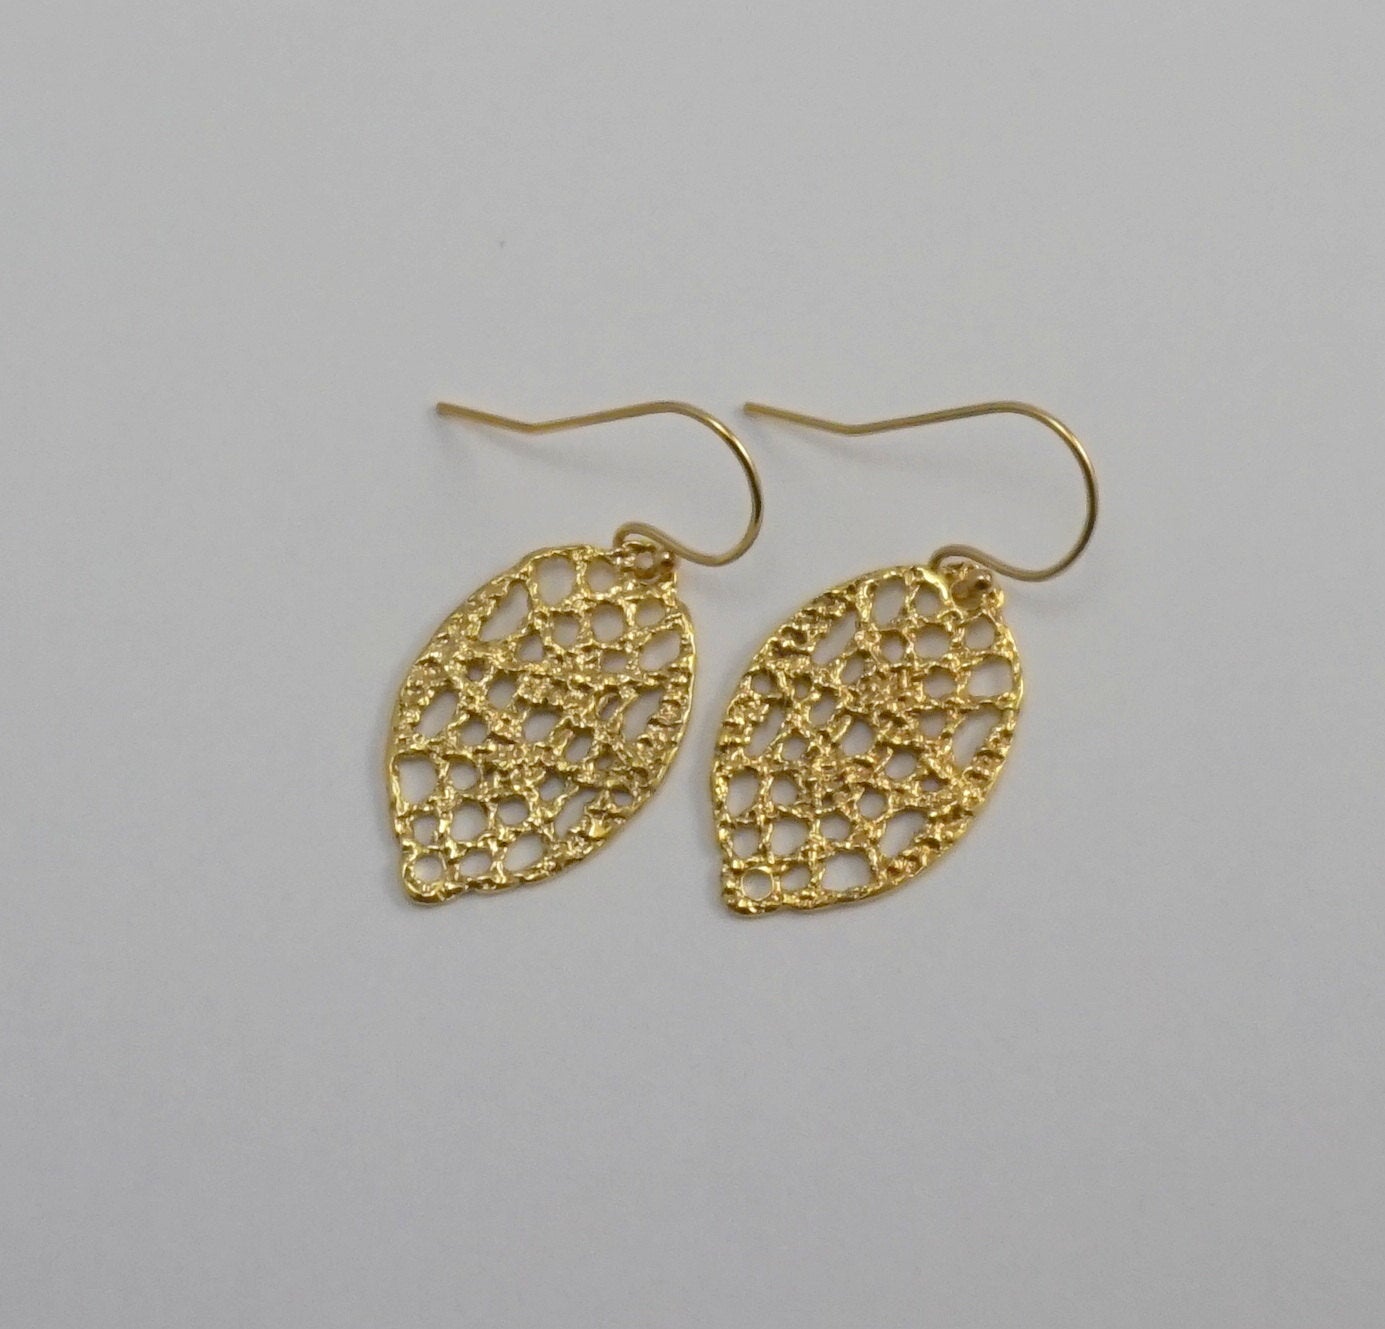 Lace drop earrings in 14k gold filled